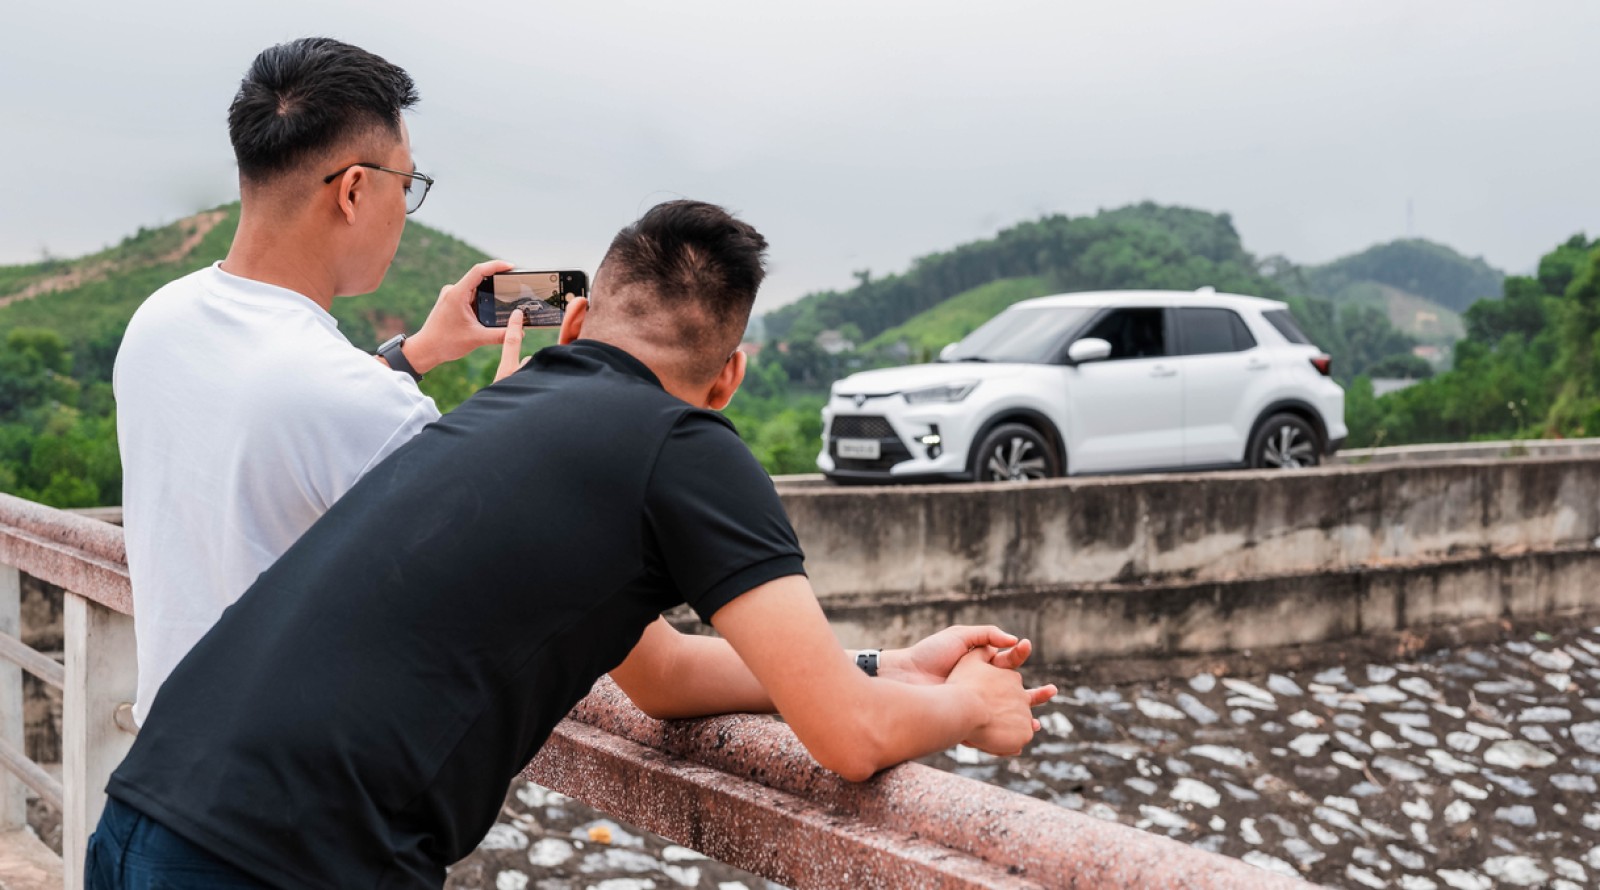 Tranh thủ hai ngày cuối tuần, Hoàng rủ Phong lên đường tới hồ Núi Cốc để cắm trại nghỉ ngơi, hướng dẫn Phong cách chụp ảnh phơi sáng và chọn Toyota Raize làm chiếc xe đồng hành trong hành trình này.